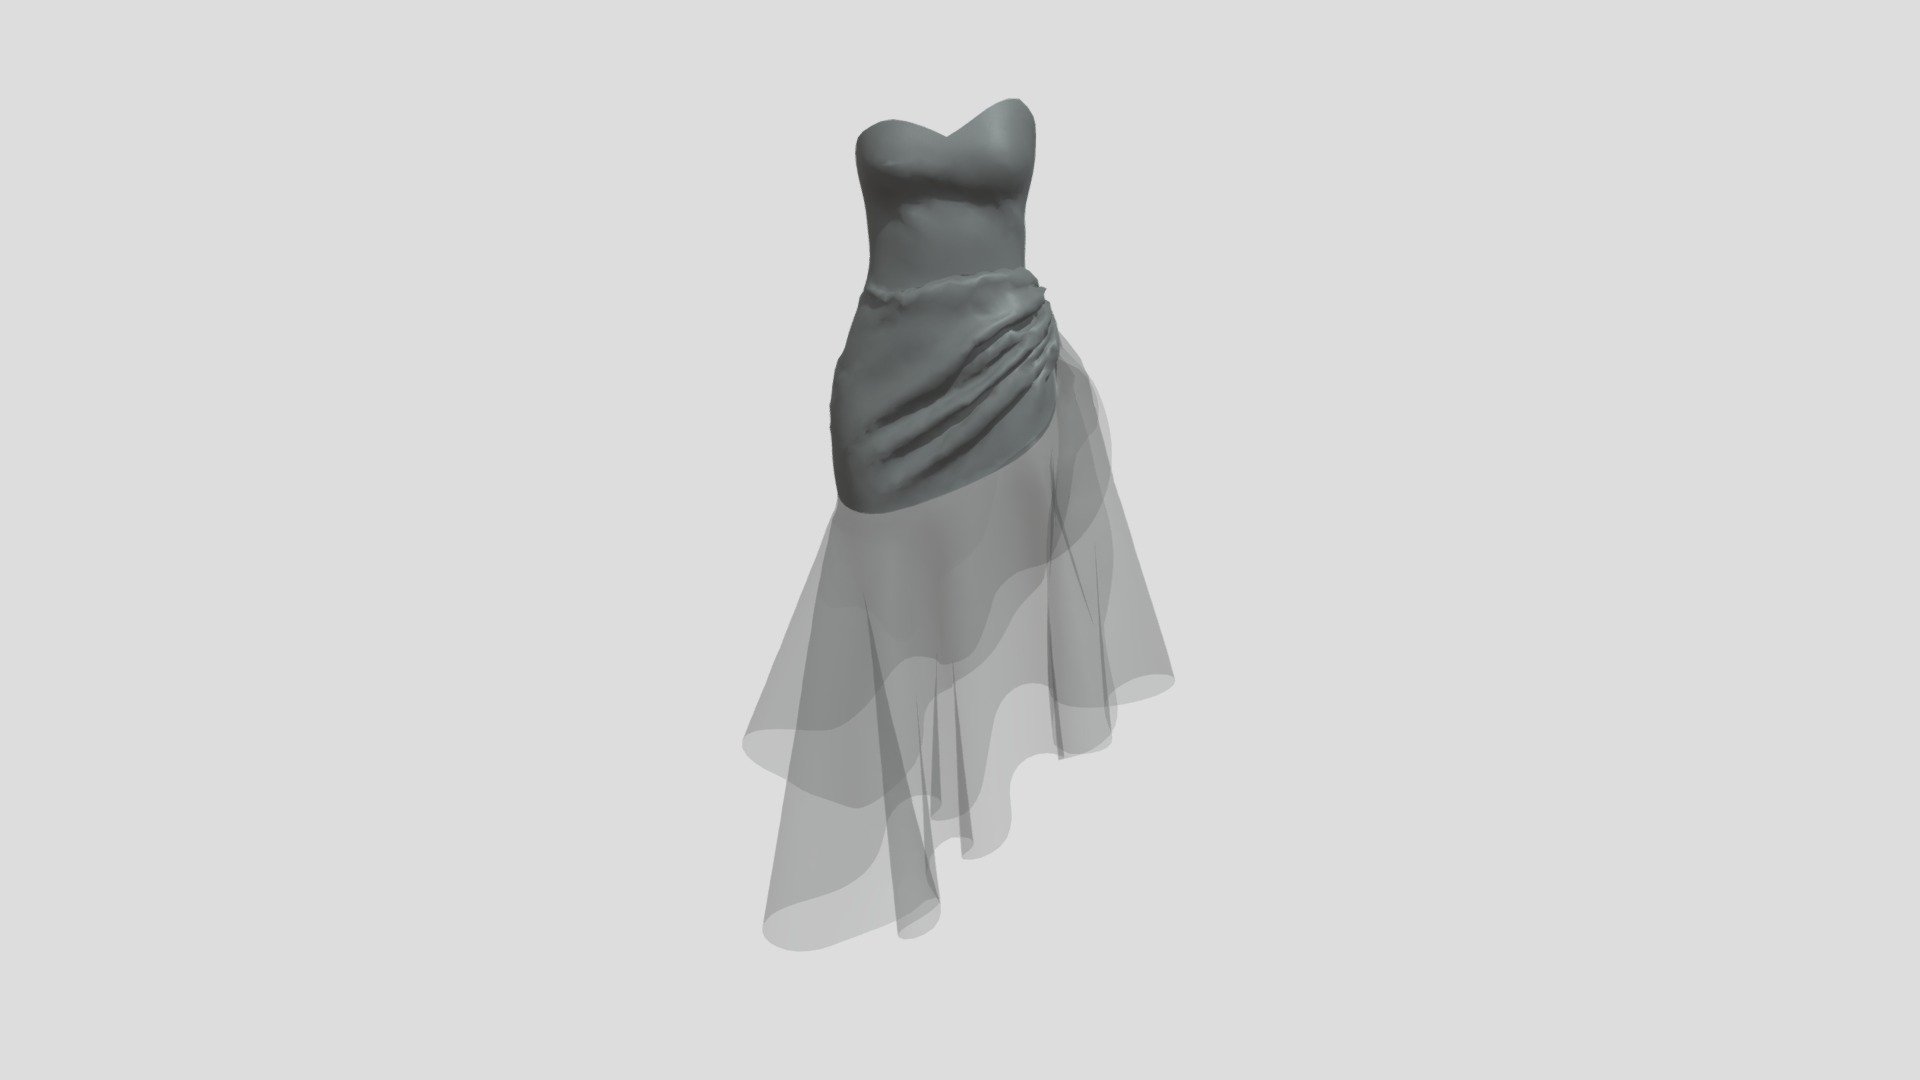 Blue Dress with GLB format - Blue Dress - 3D model by springsunsine 3d model